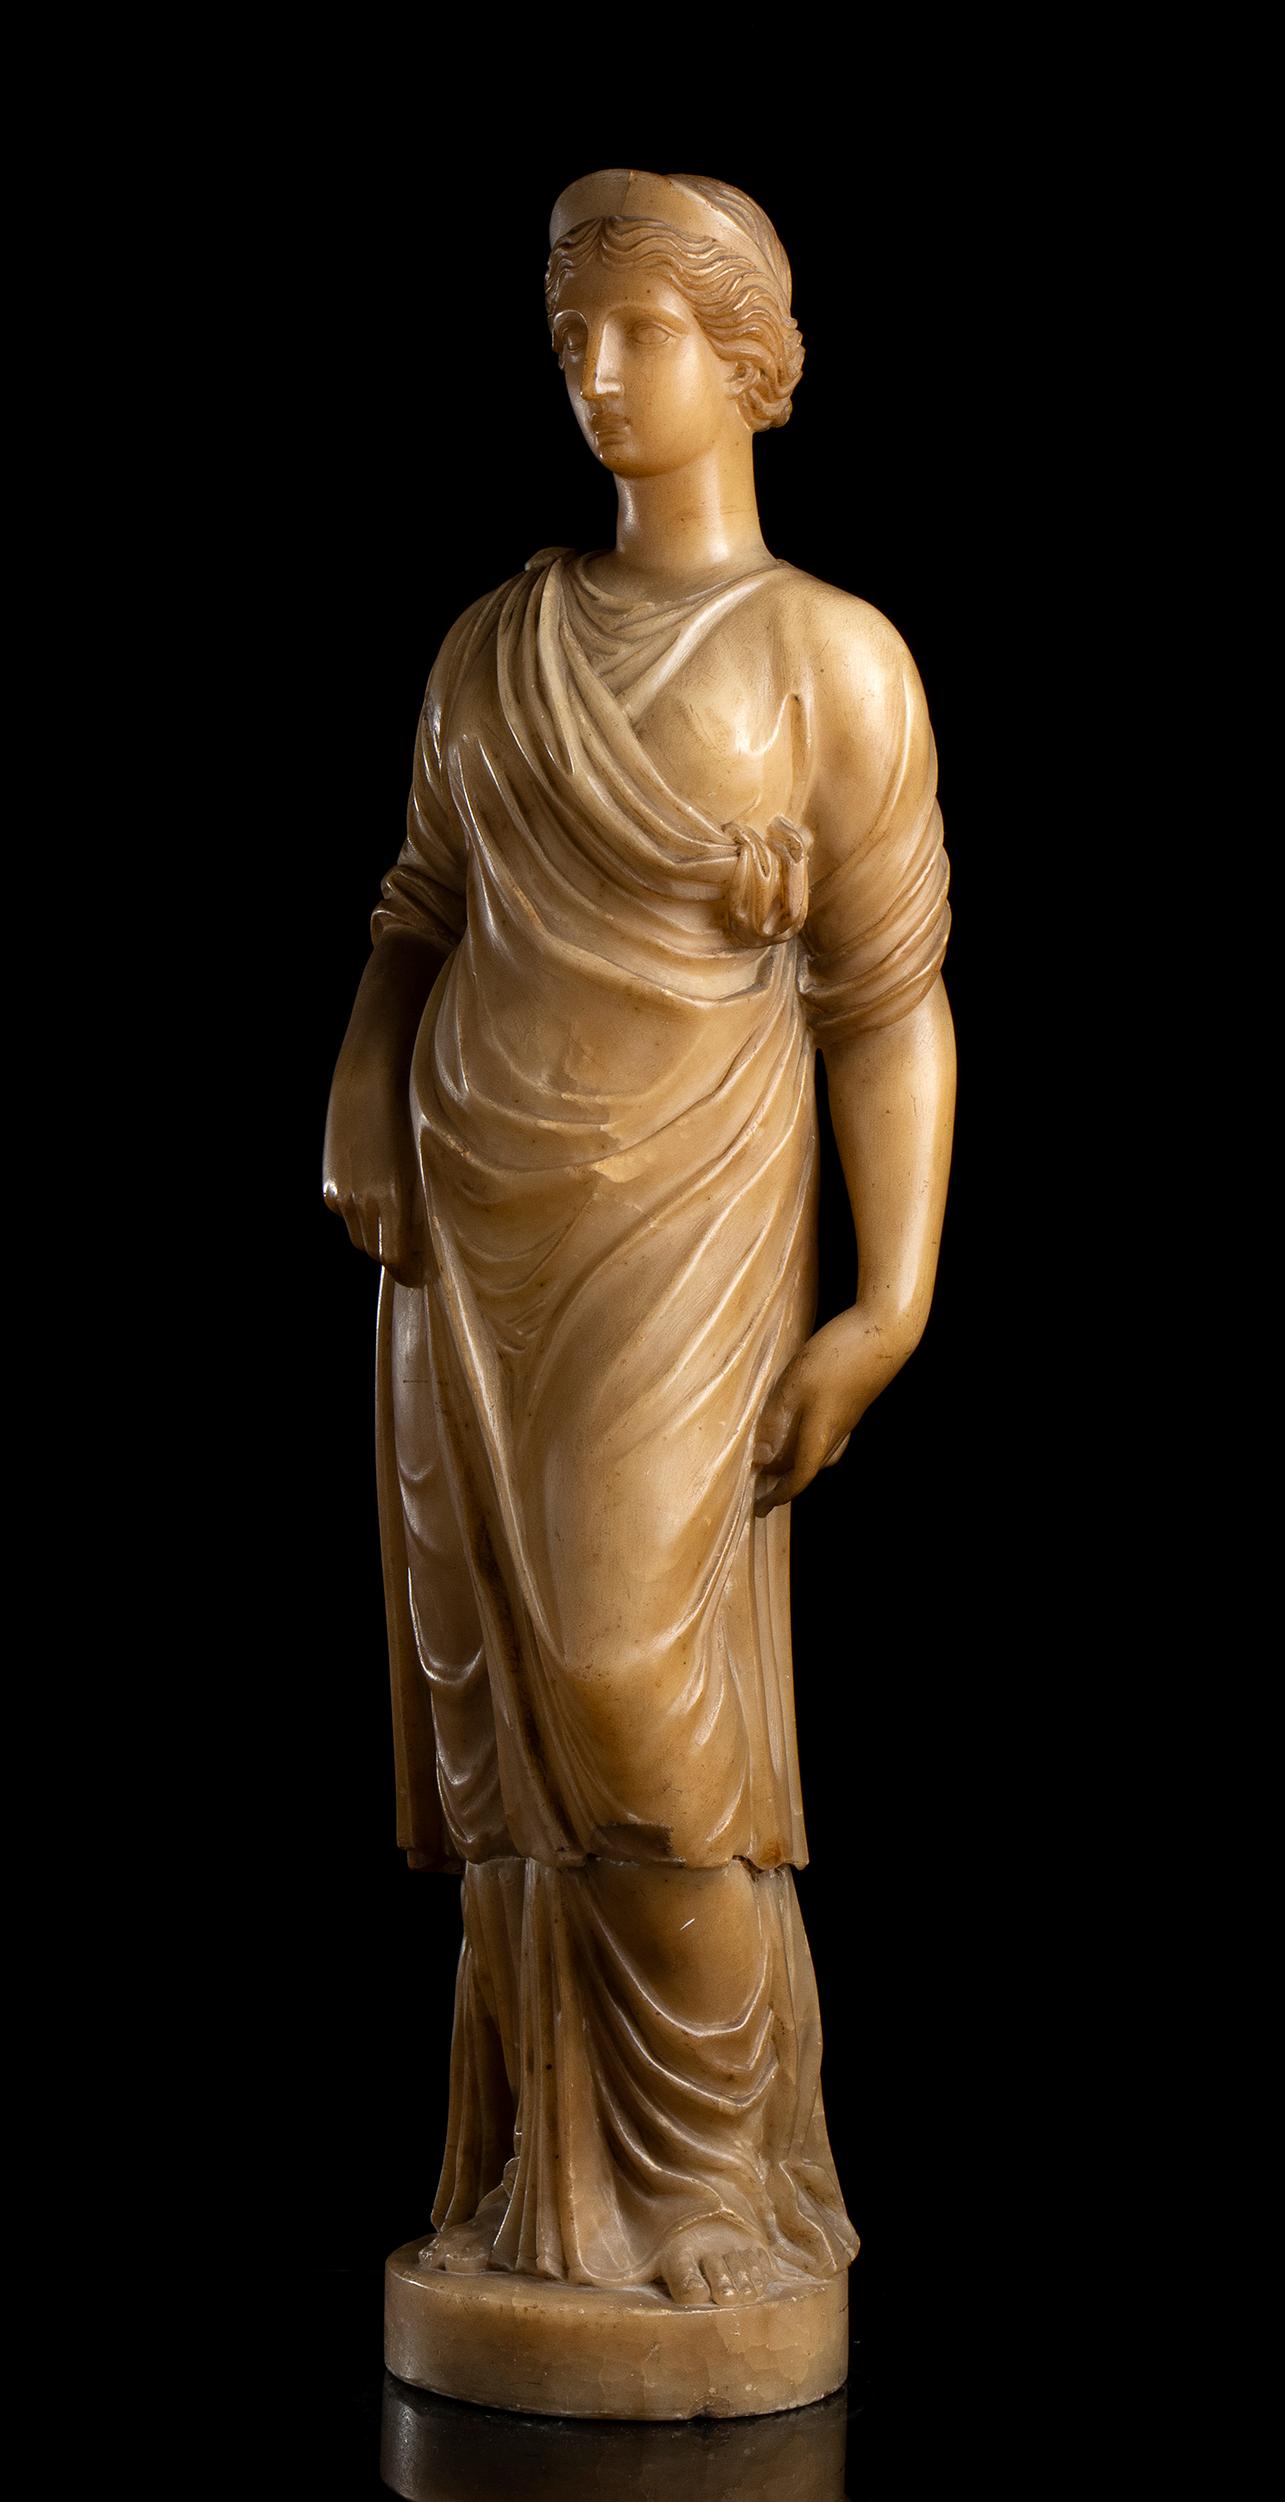 Exceptionnelle statue romaine en albâtre, provenance italienne, début du 19e siècle, période 1800-1810 ca.
La statue d'albâtre représente une vestale du temple, vêtue d'un costume romain antique.
De grande taille et d'une grande qualité de